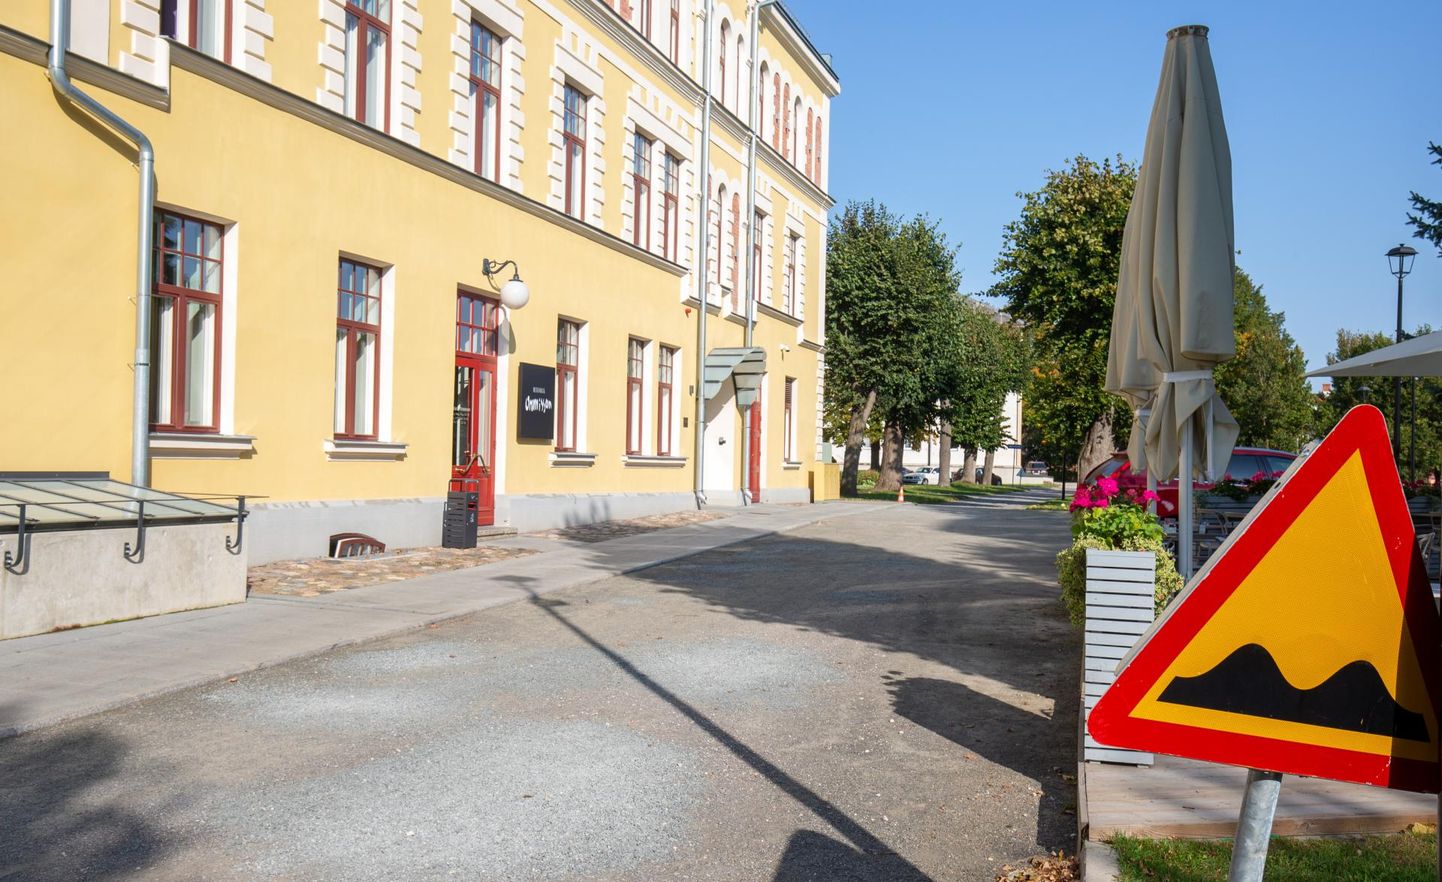 Hiire tänav on kitsas tee, mis viib läbi kahe pargi vahelt. Selle tänava ääres asub Park Hotell Viljandi.